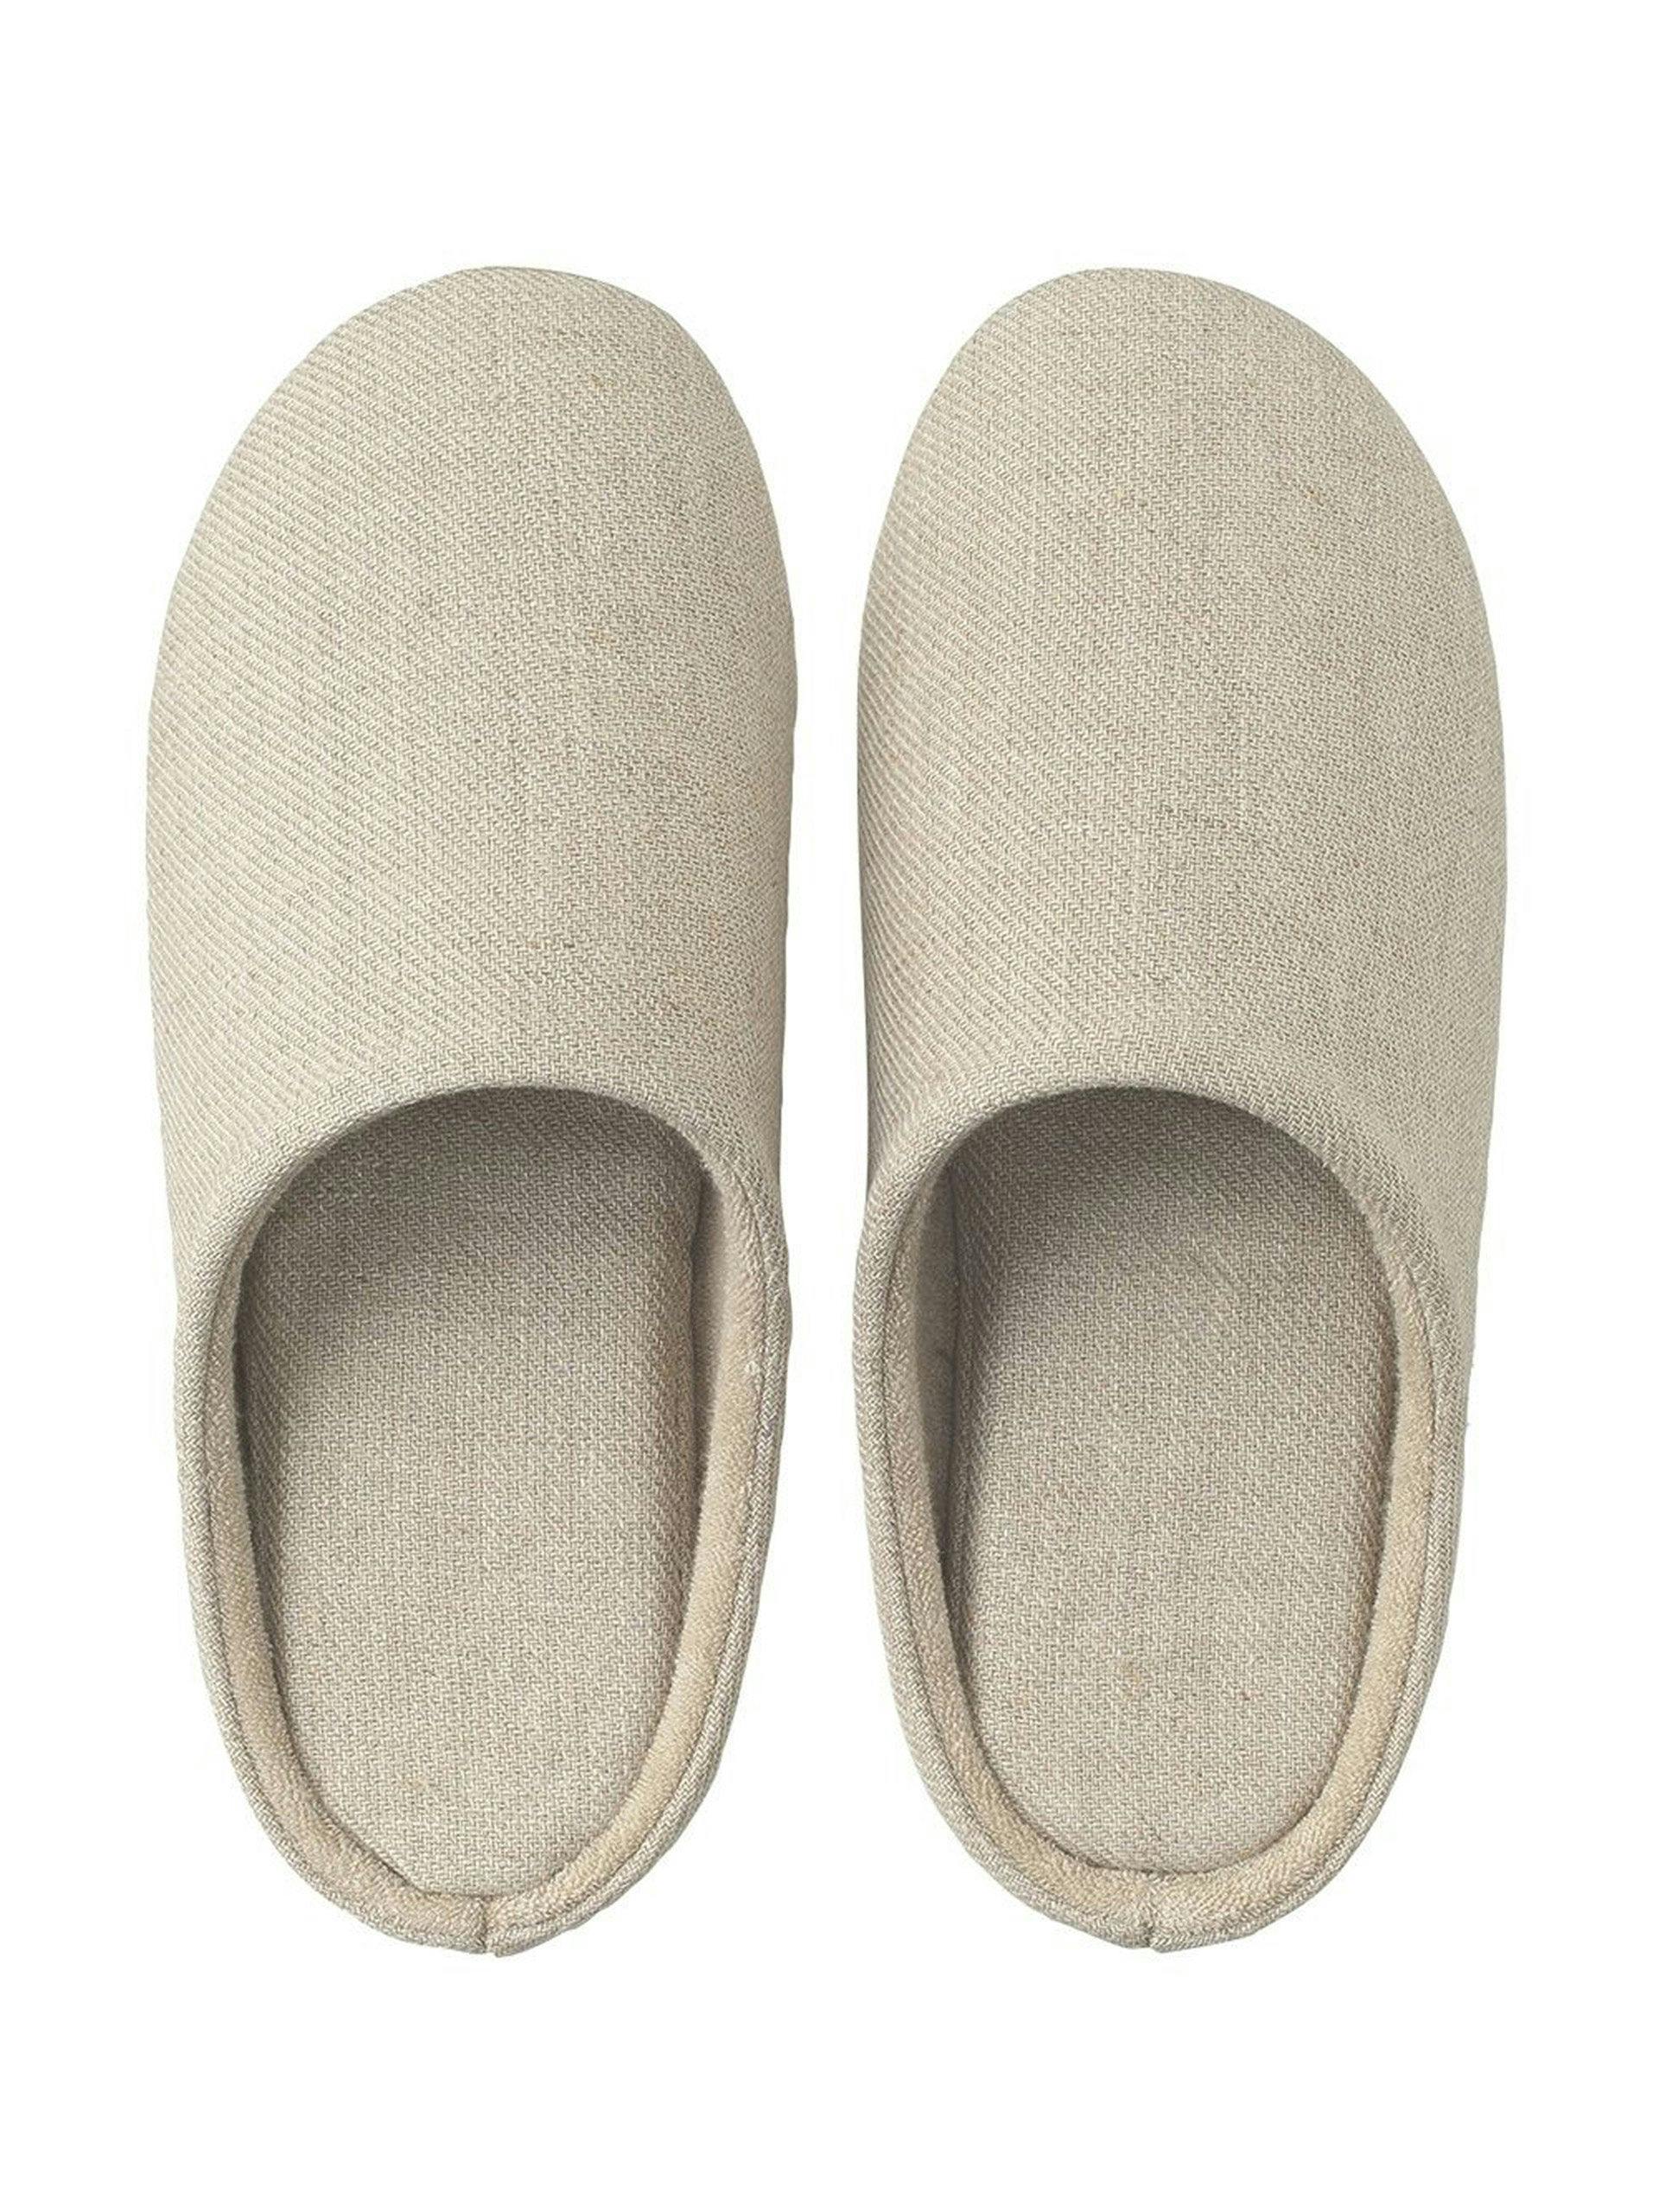 Beige linen slippers